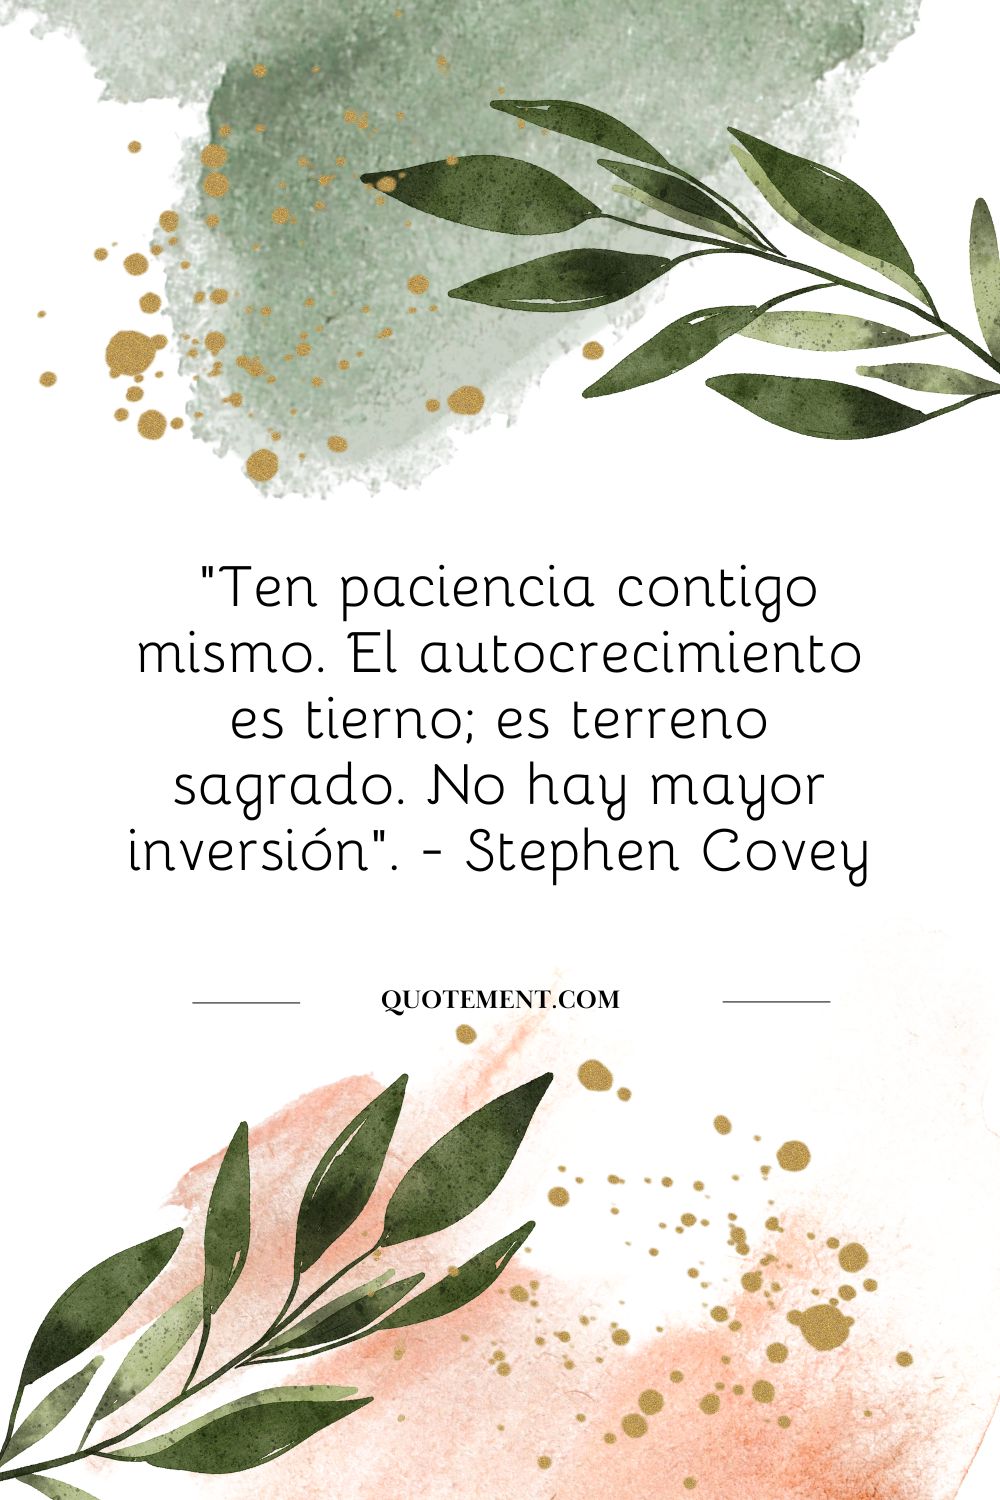 "Sé paciente contigo mismo. El autocrecimiento es tierno; es terreno sagrado. No hay mayor inversión". - Stephen Covey